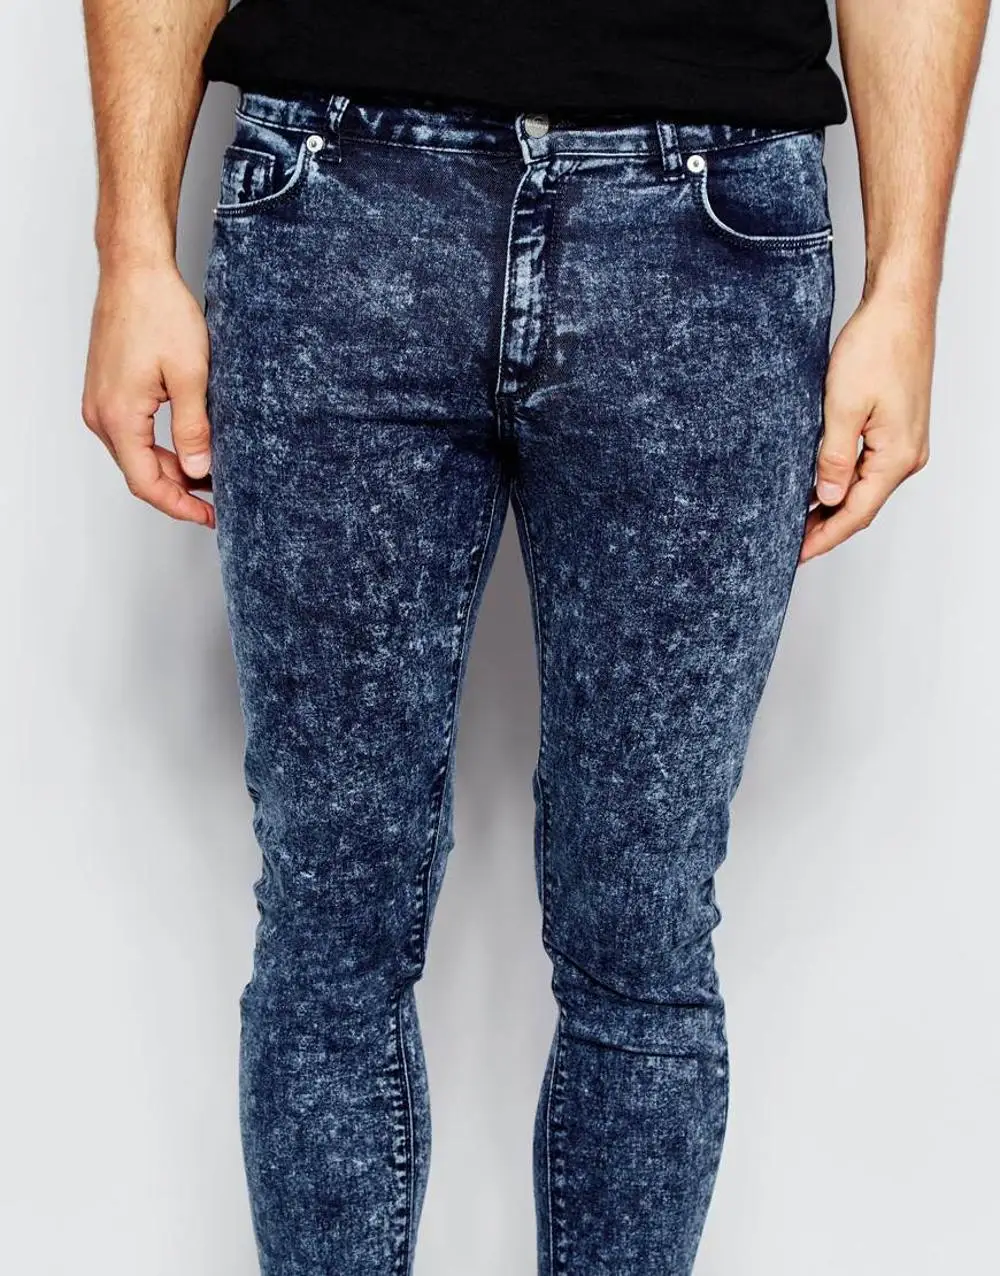 washed blue denim jeans